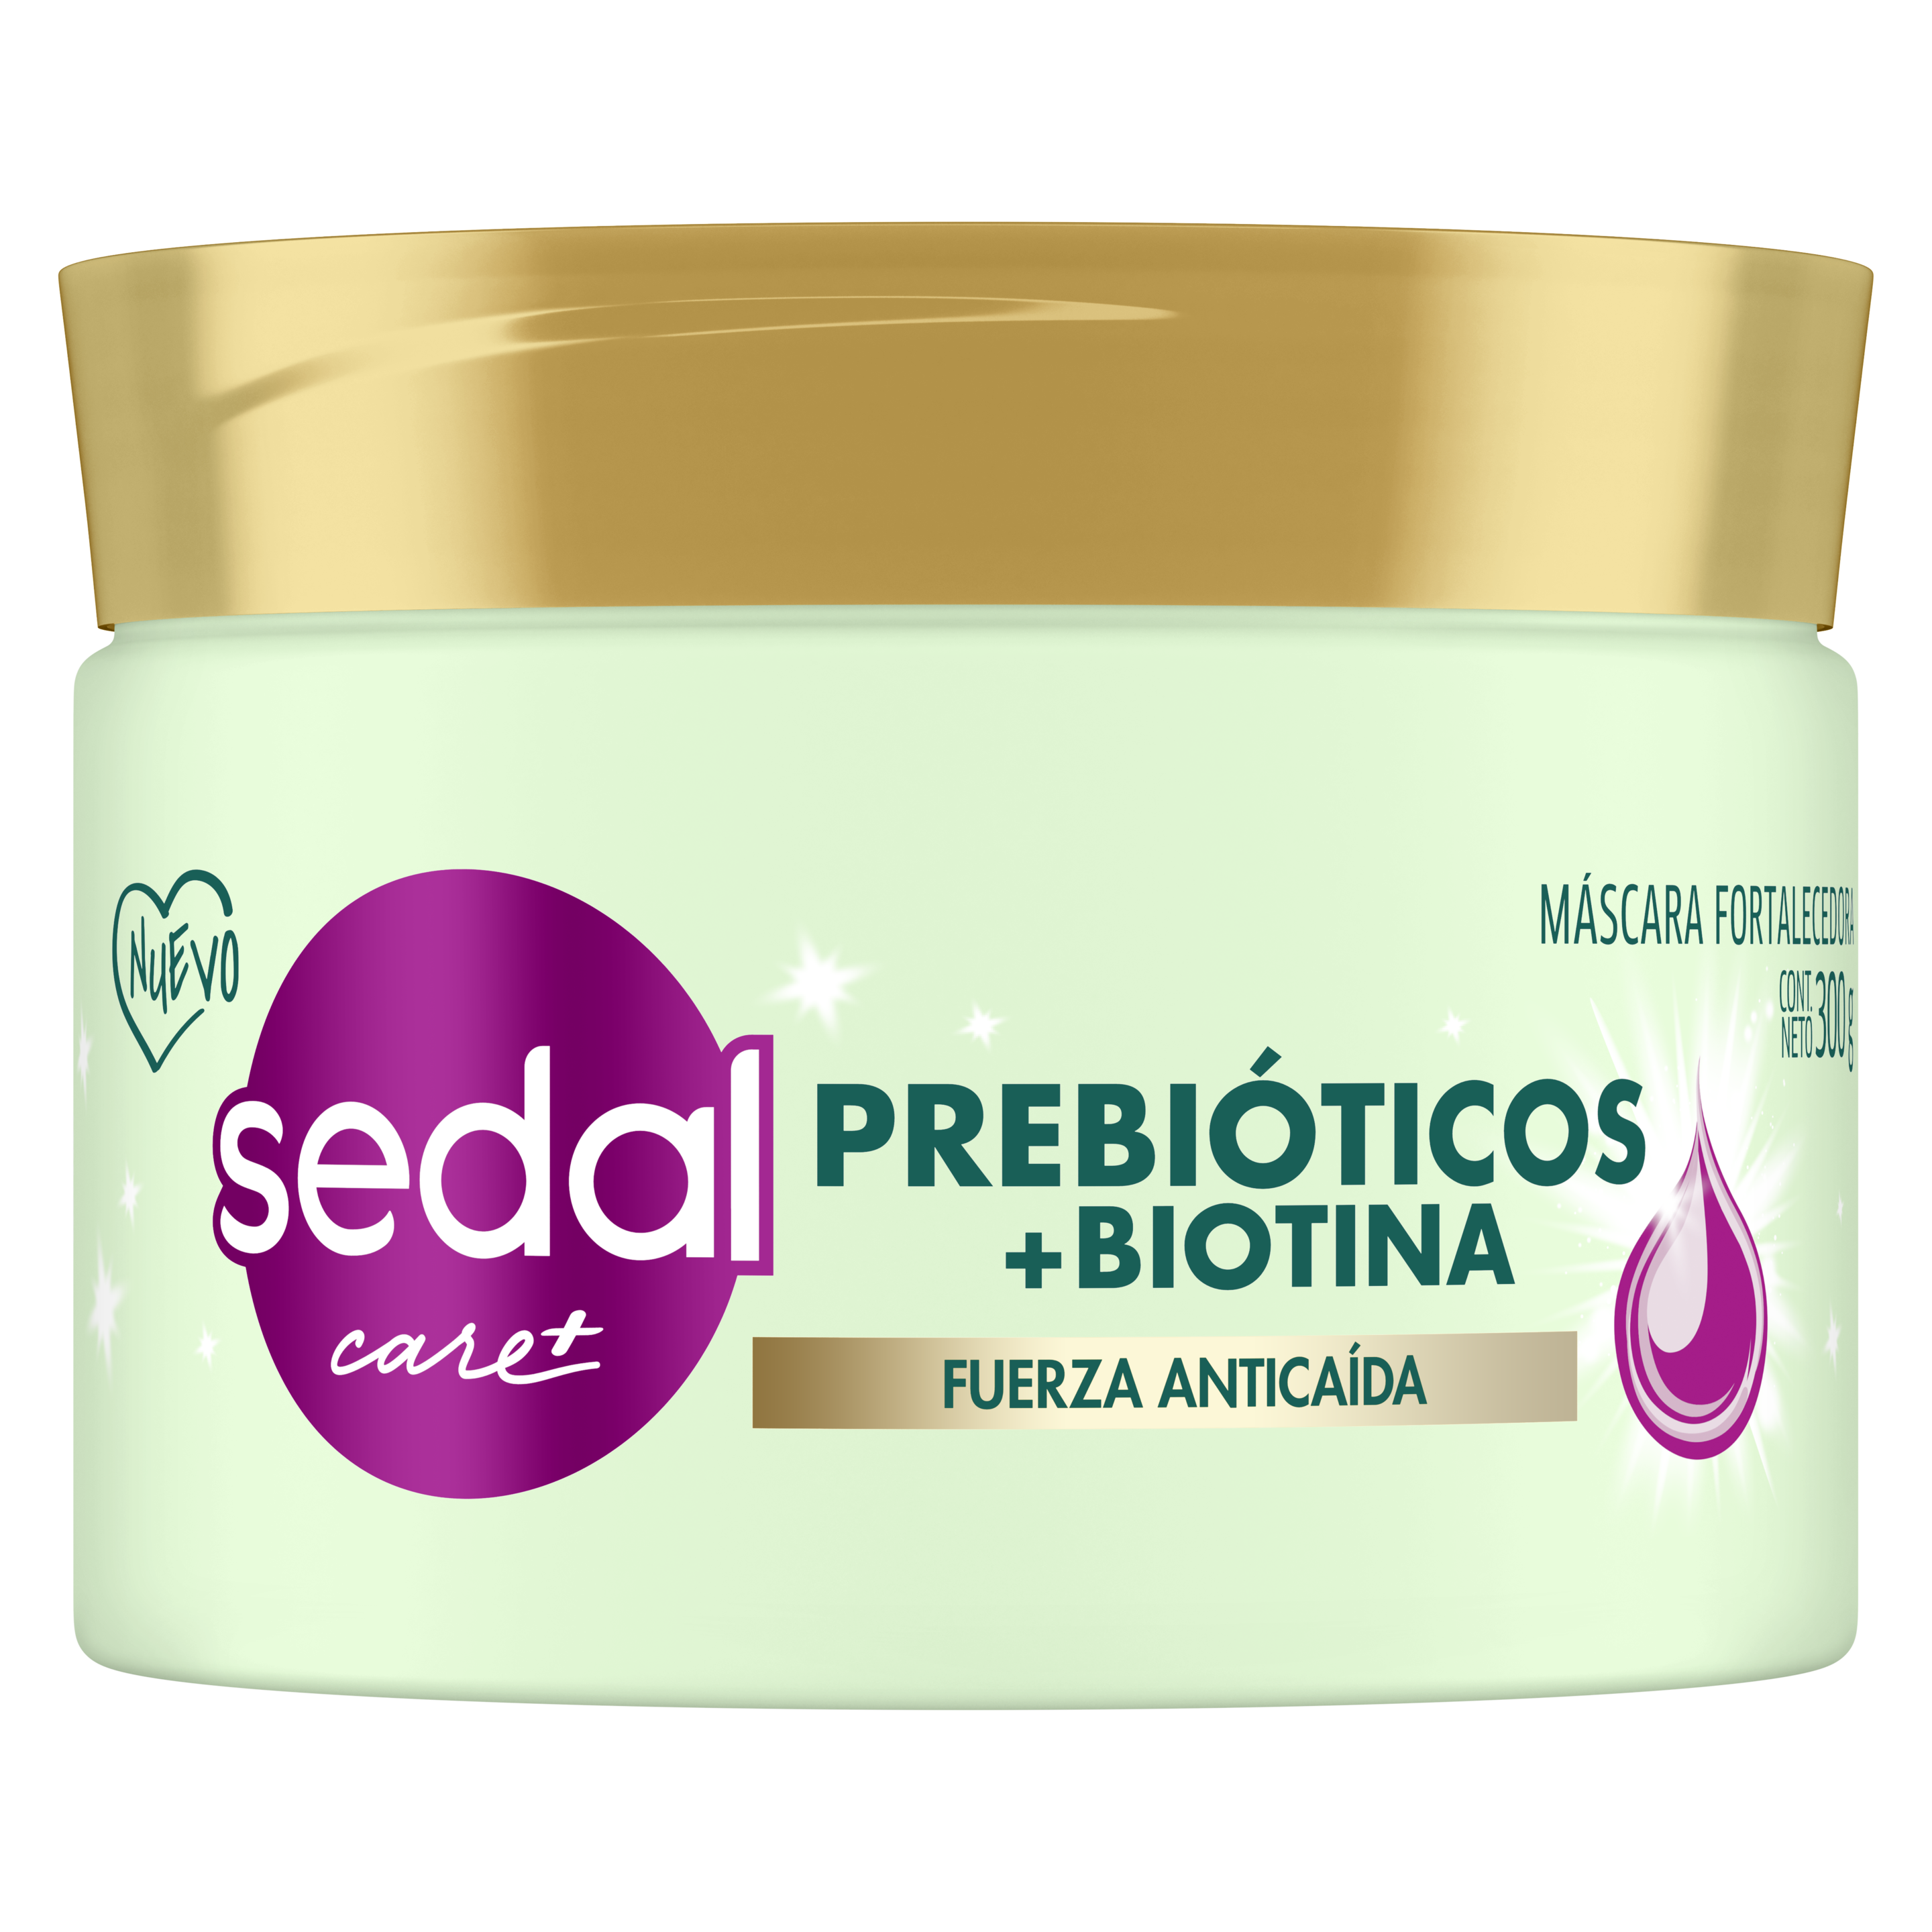 Imagen de envase Prebióticos + Biotina Mascara de tratamiento 300gr